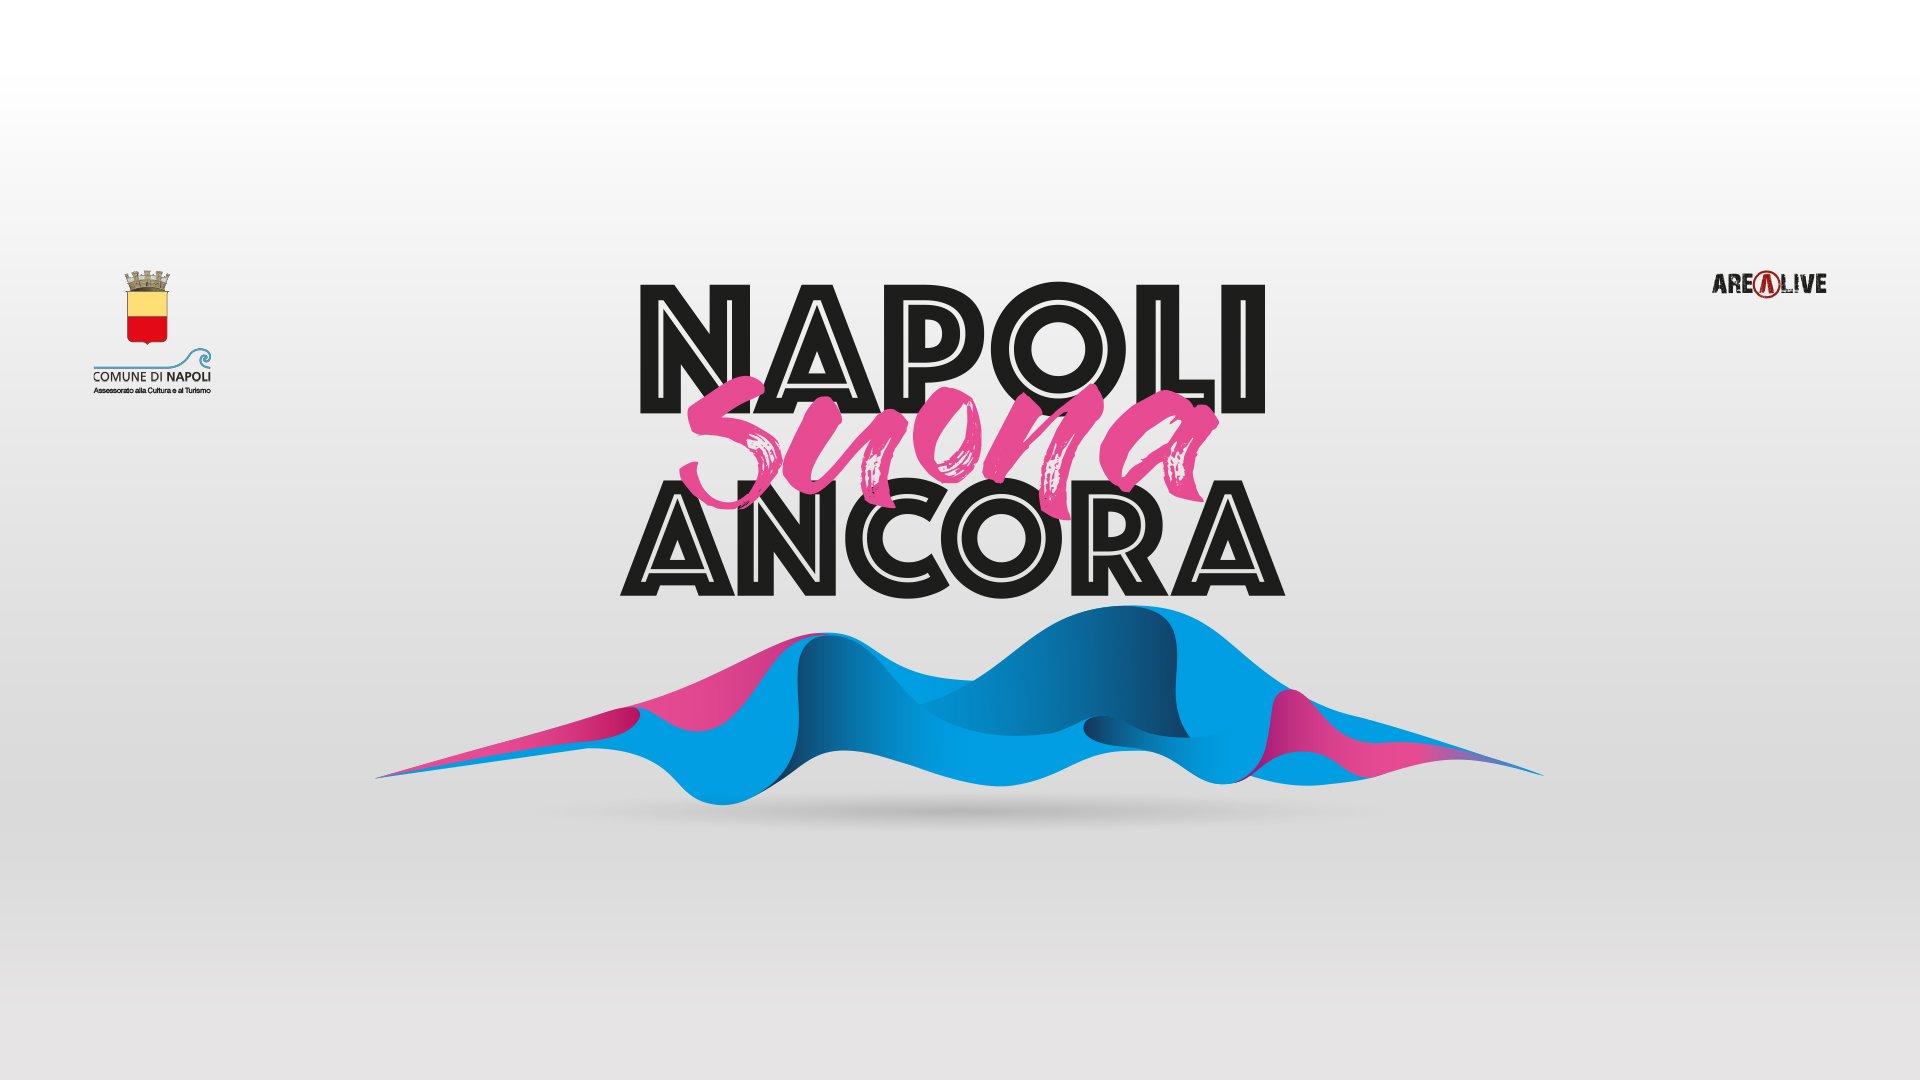 Napoli suona ancora: da domani on line le prime performance